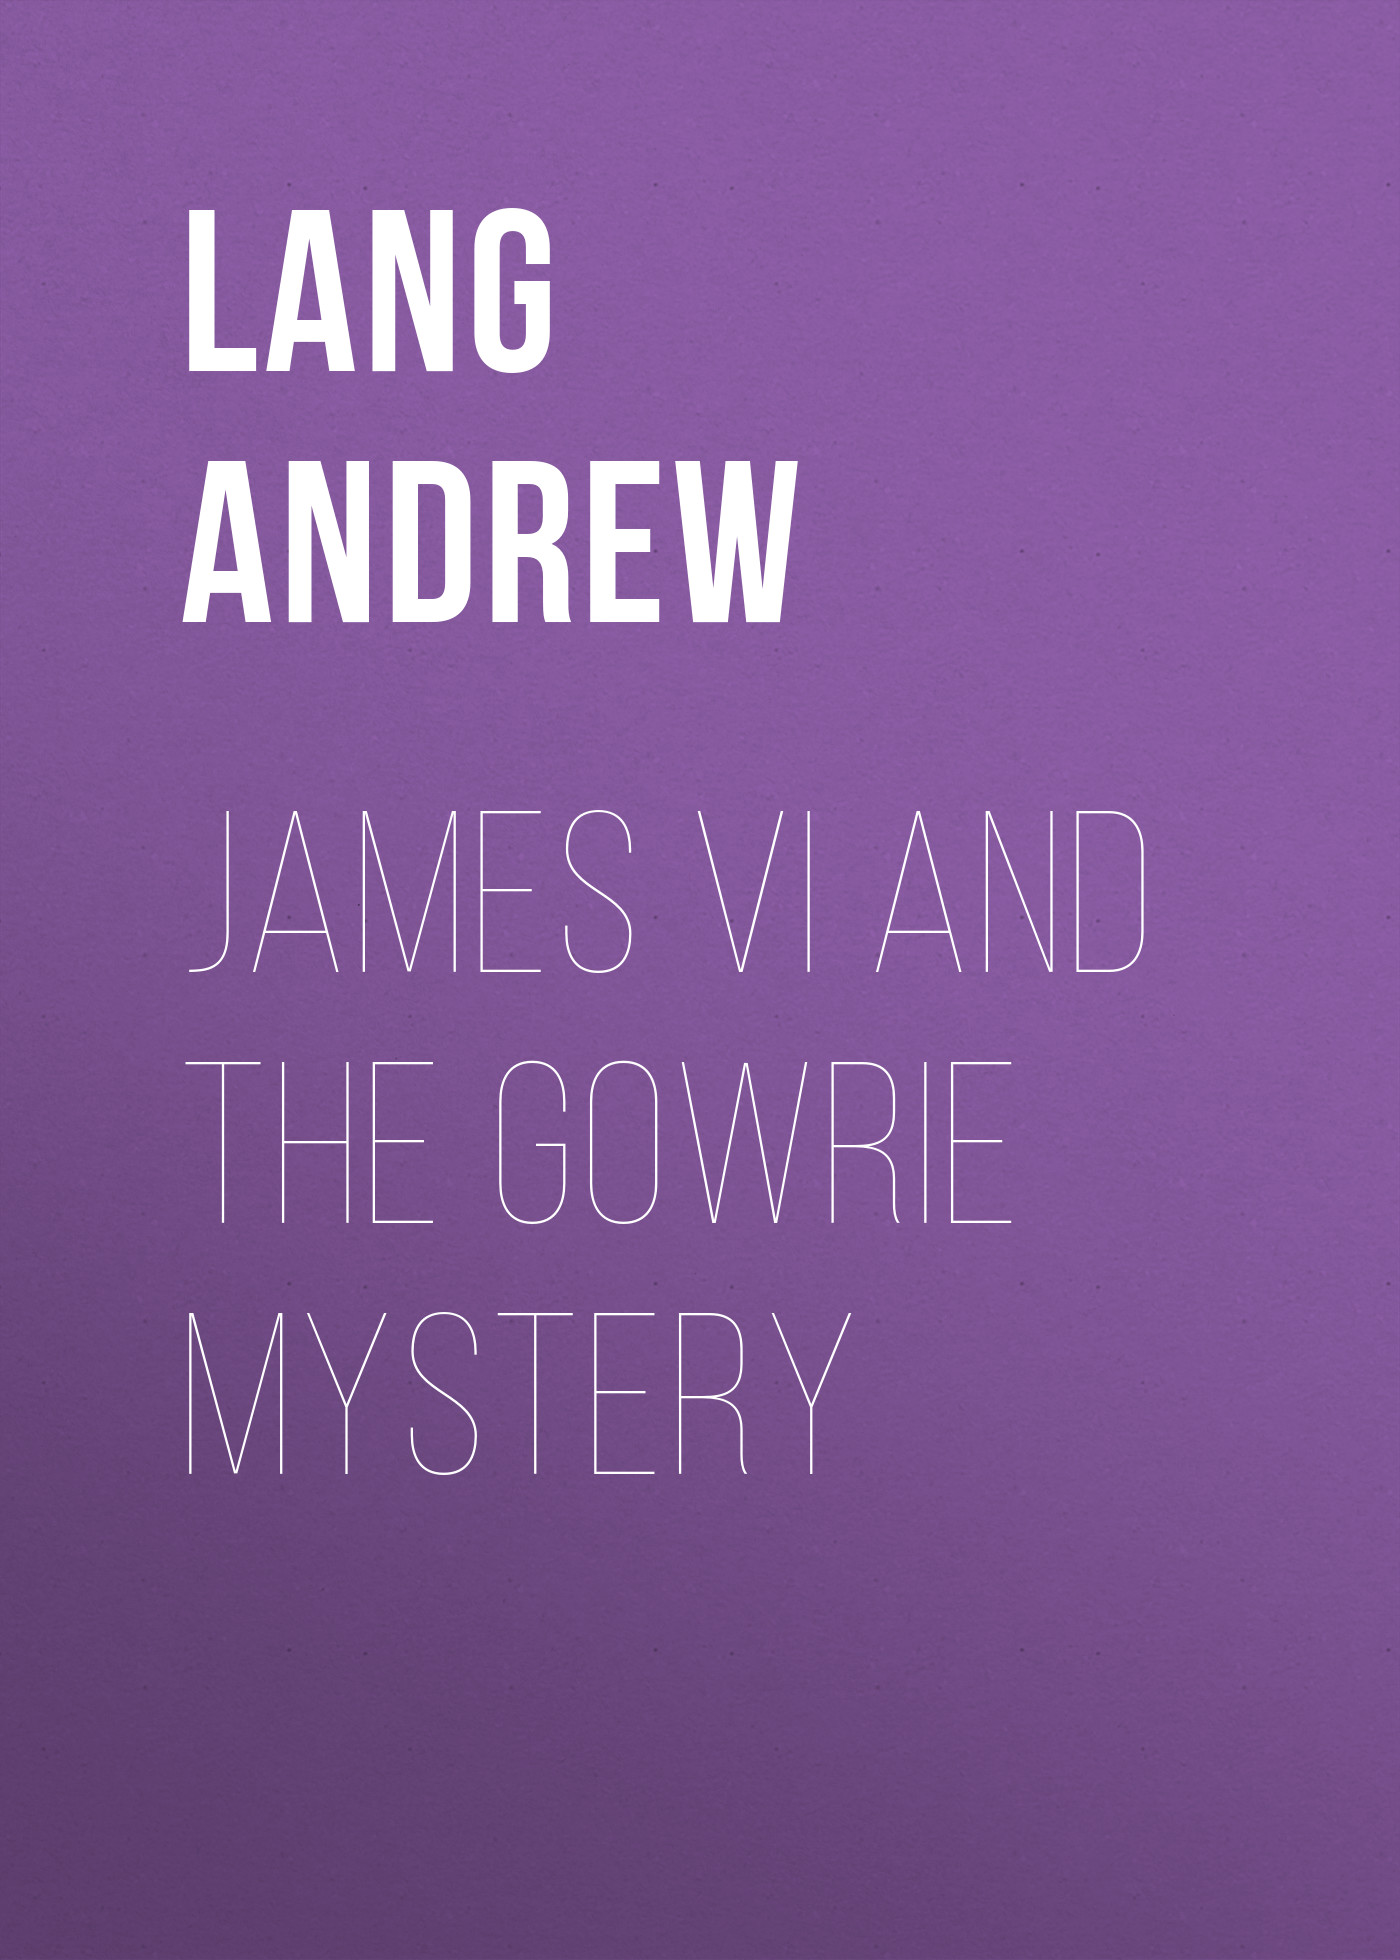 Книга James VI and the Gowrie Mystery из серии , созданная Andrew Lang, может относится к жанру Зарубежная старинная литература, Зарубежная классика. Стоимость электронной книги James VI and the Gowrie Mystery с идентификатором 25228396 составляет 0 руб.